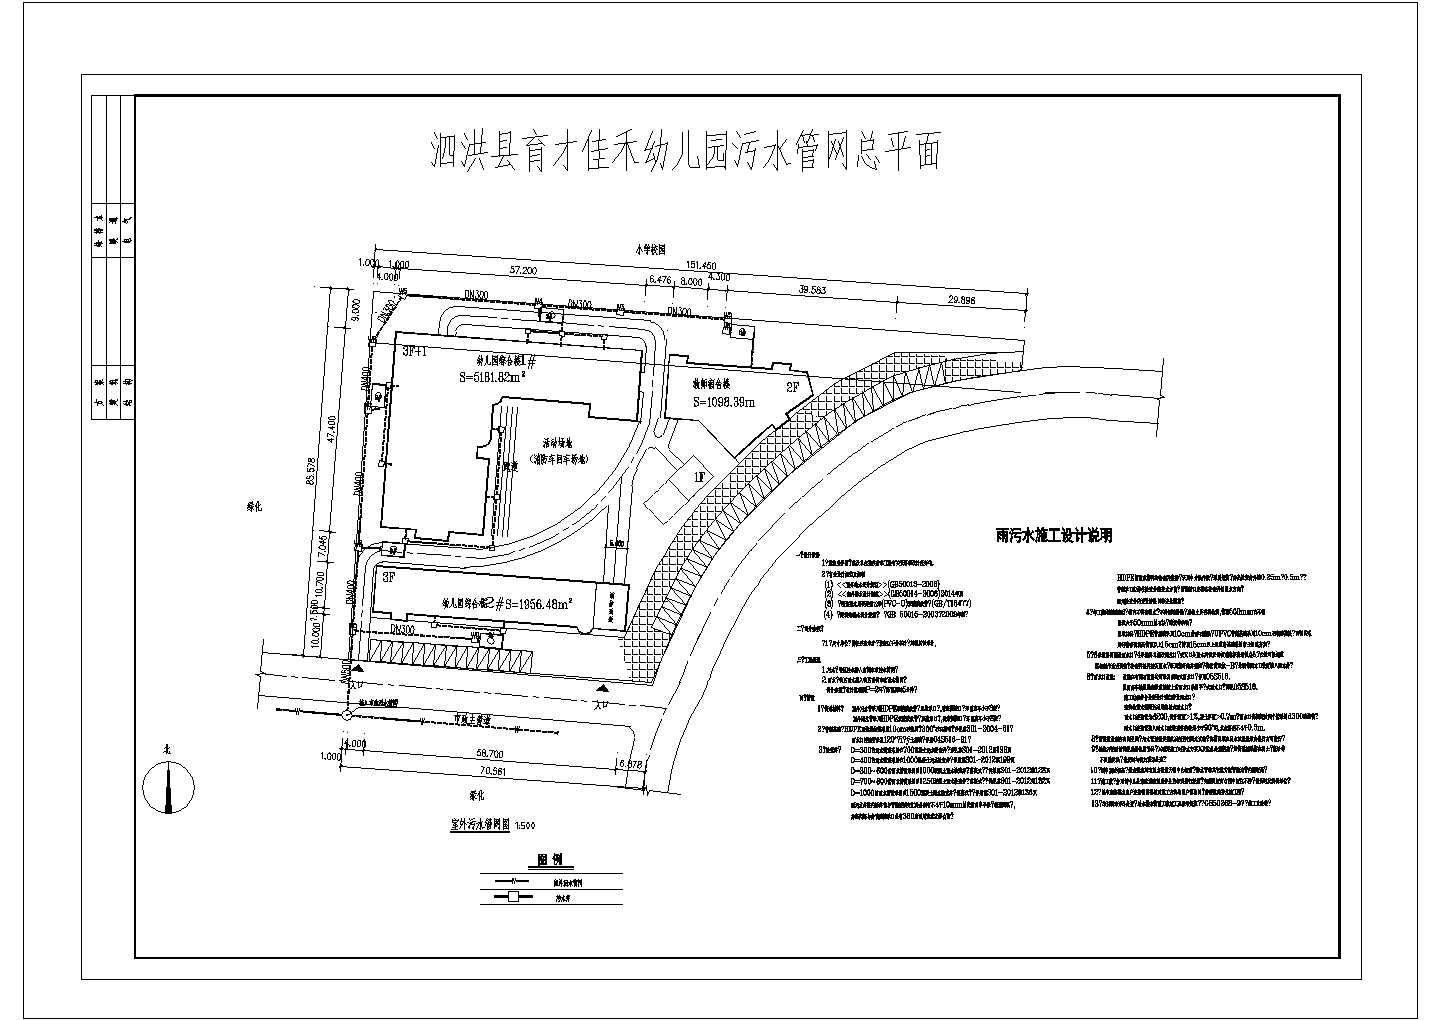 佳禾幼儿园雨污管网施工图设计